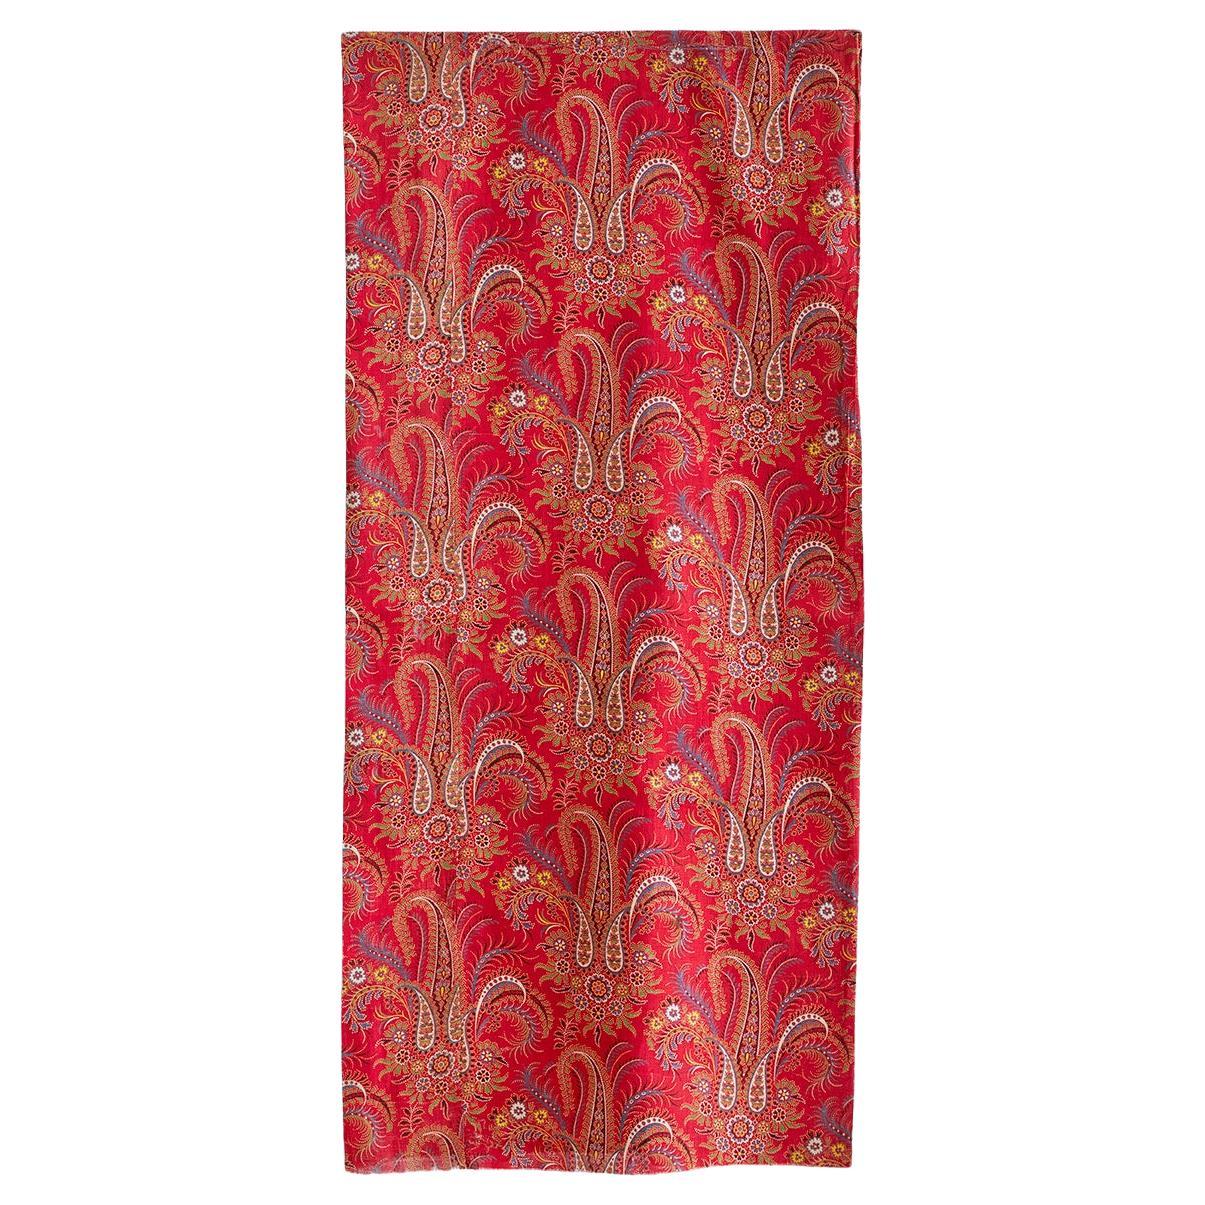 Grand textile vintage à motif cachemire rouge, France, 20ème siècle